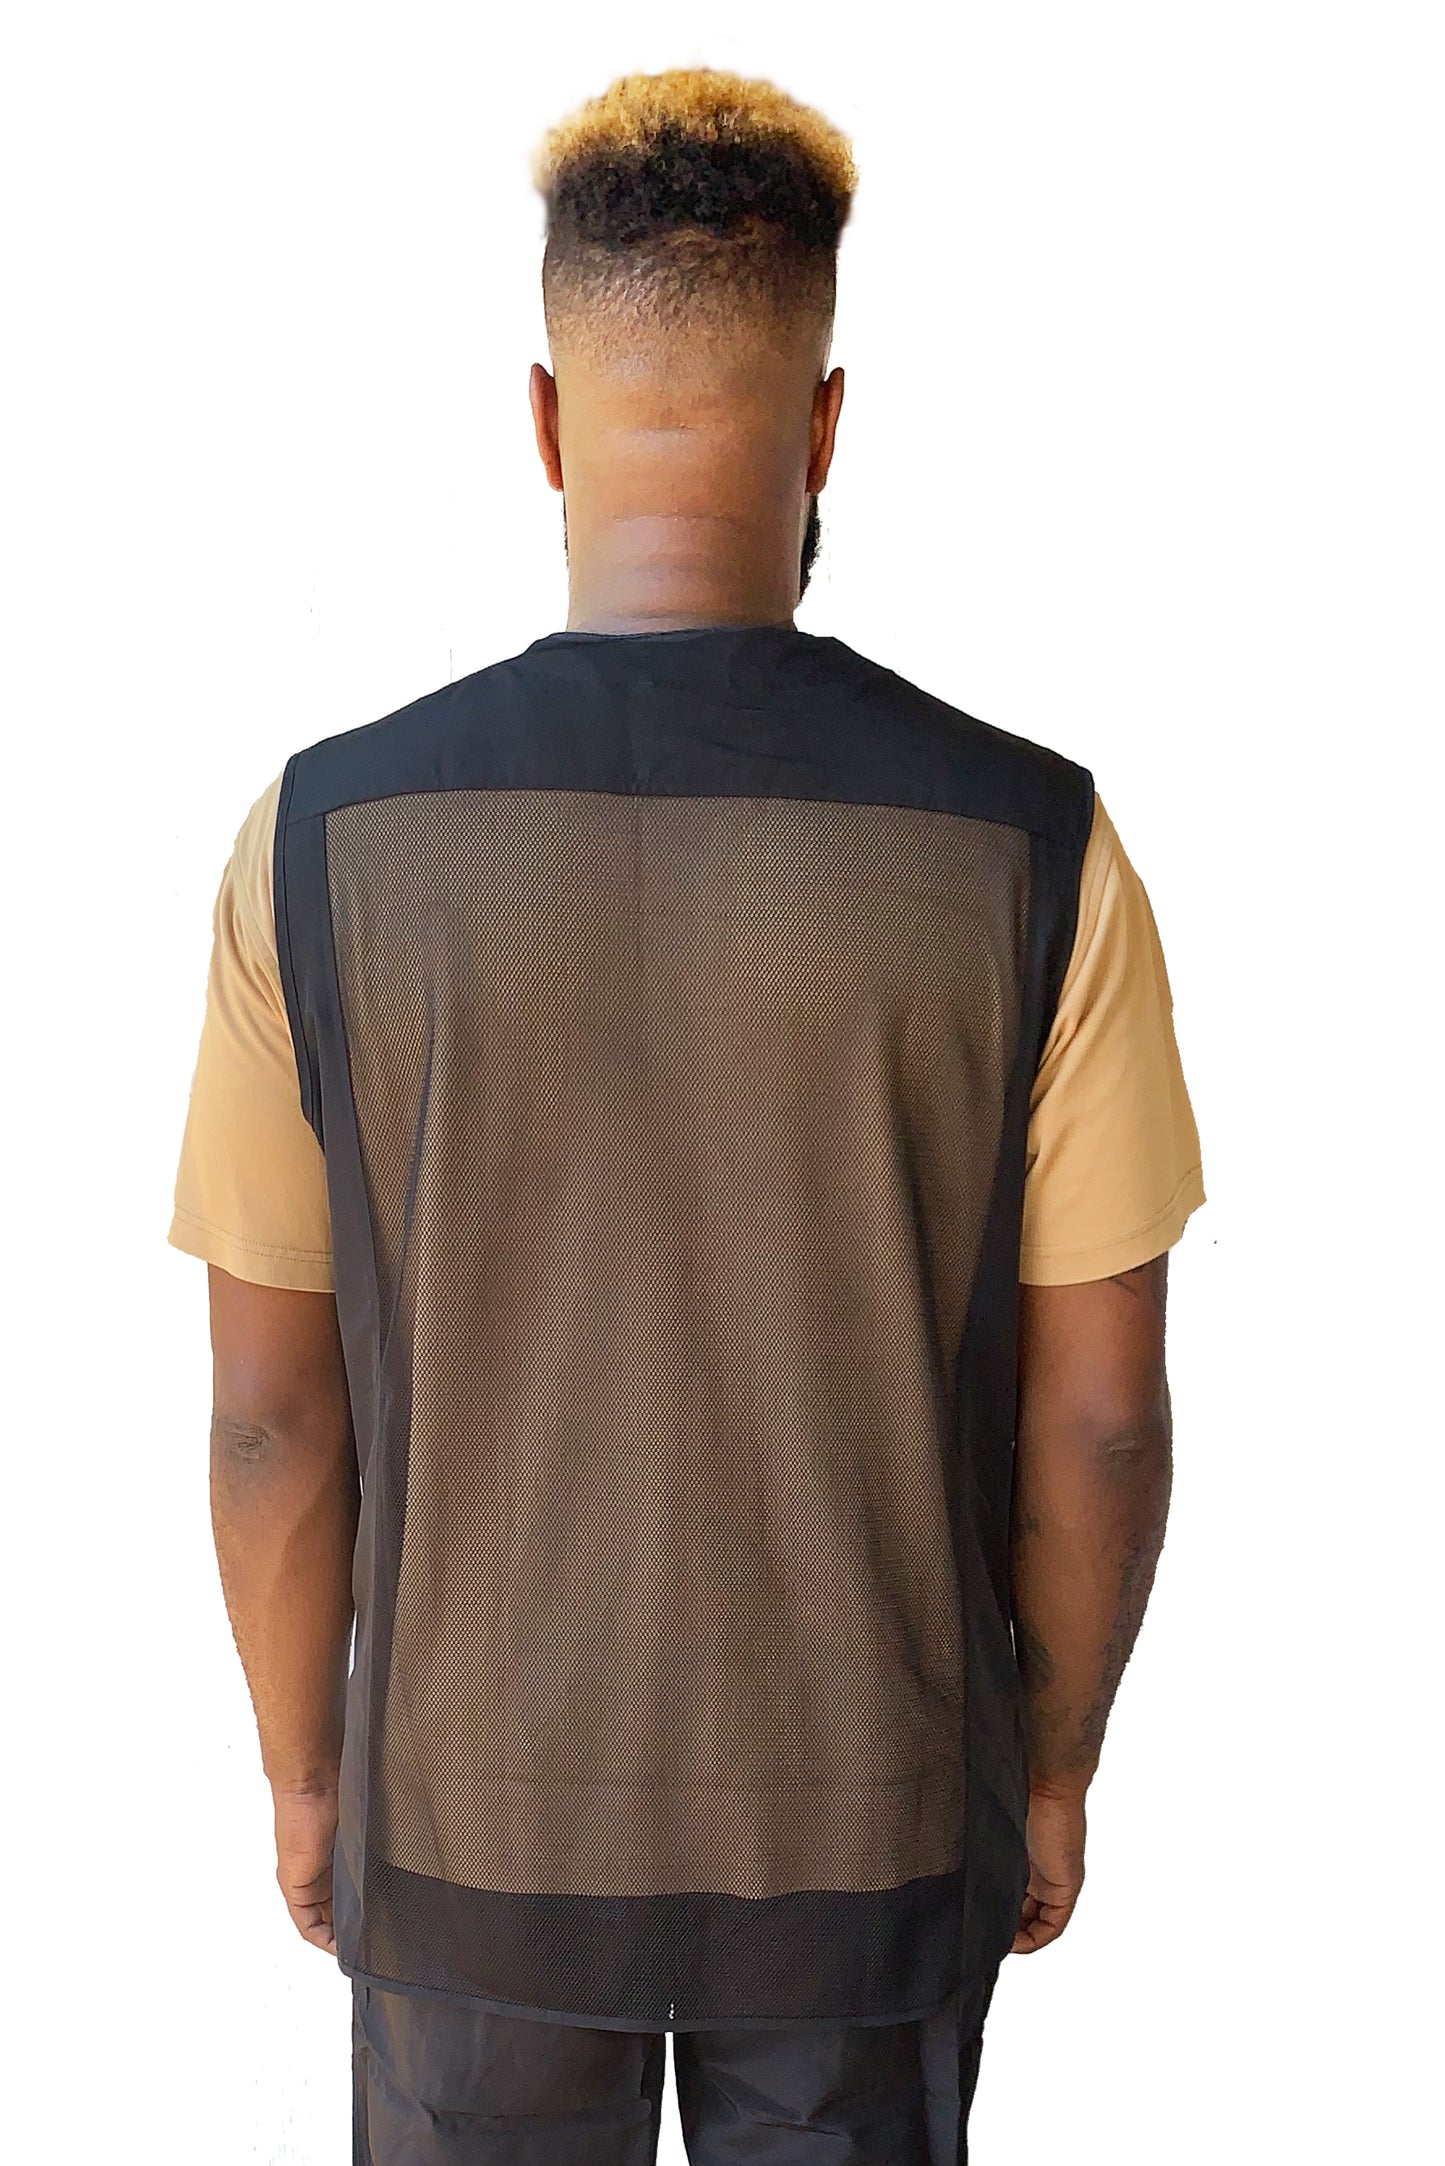 880 – Black V Neck Waterproof Vest